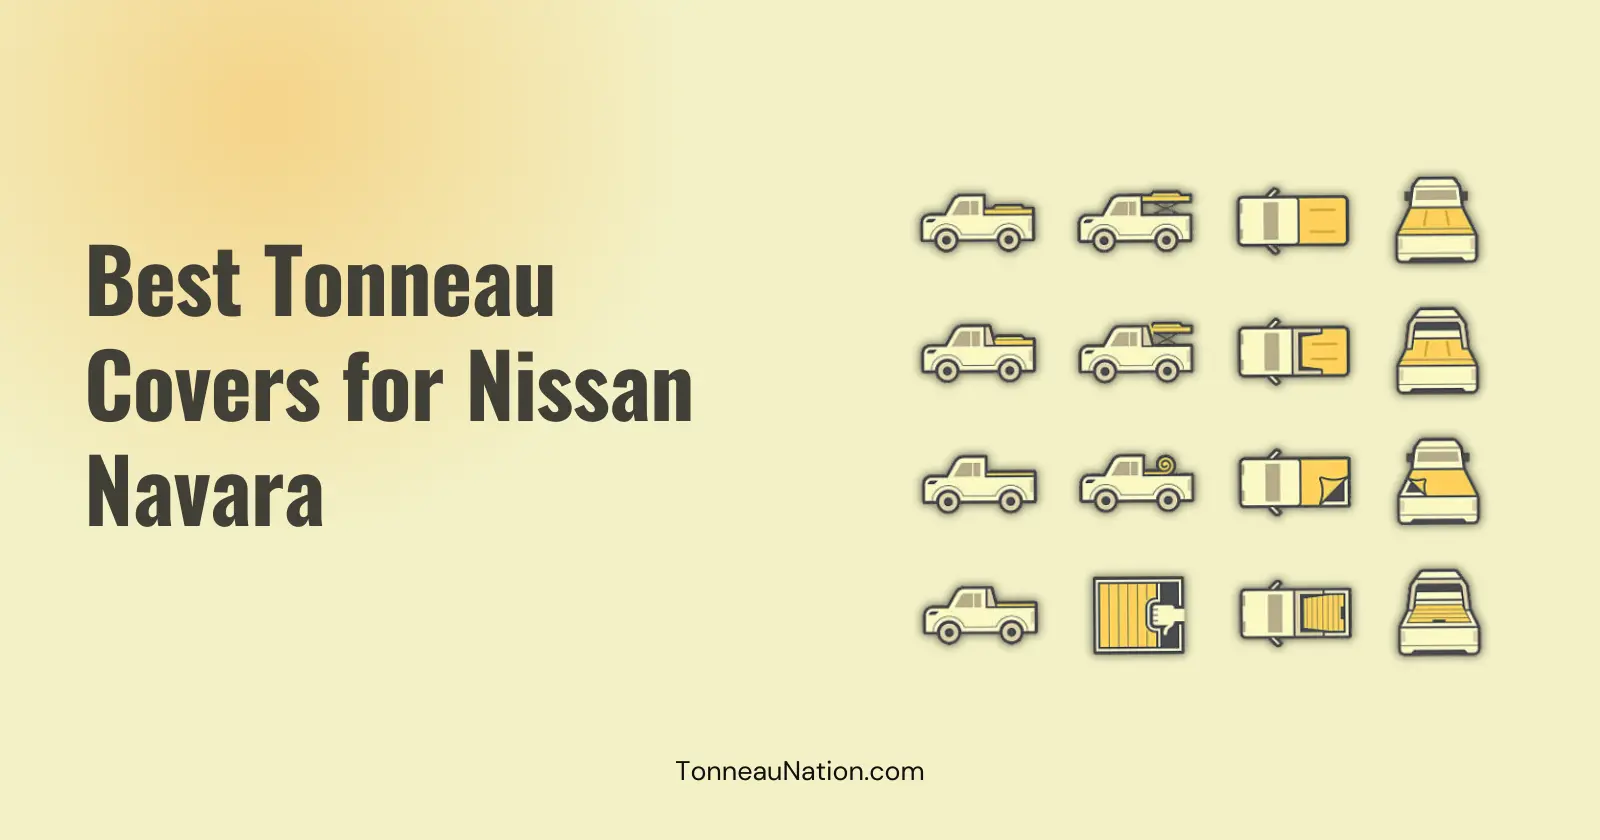 Tonneau cover for Nissan Navara